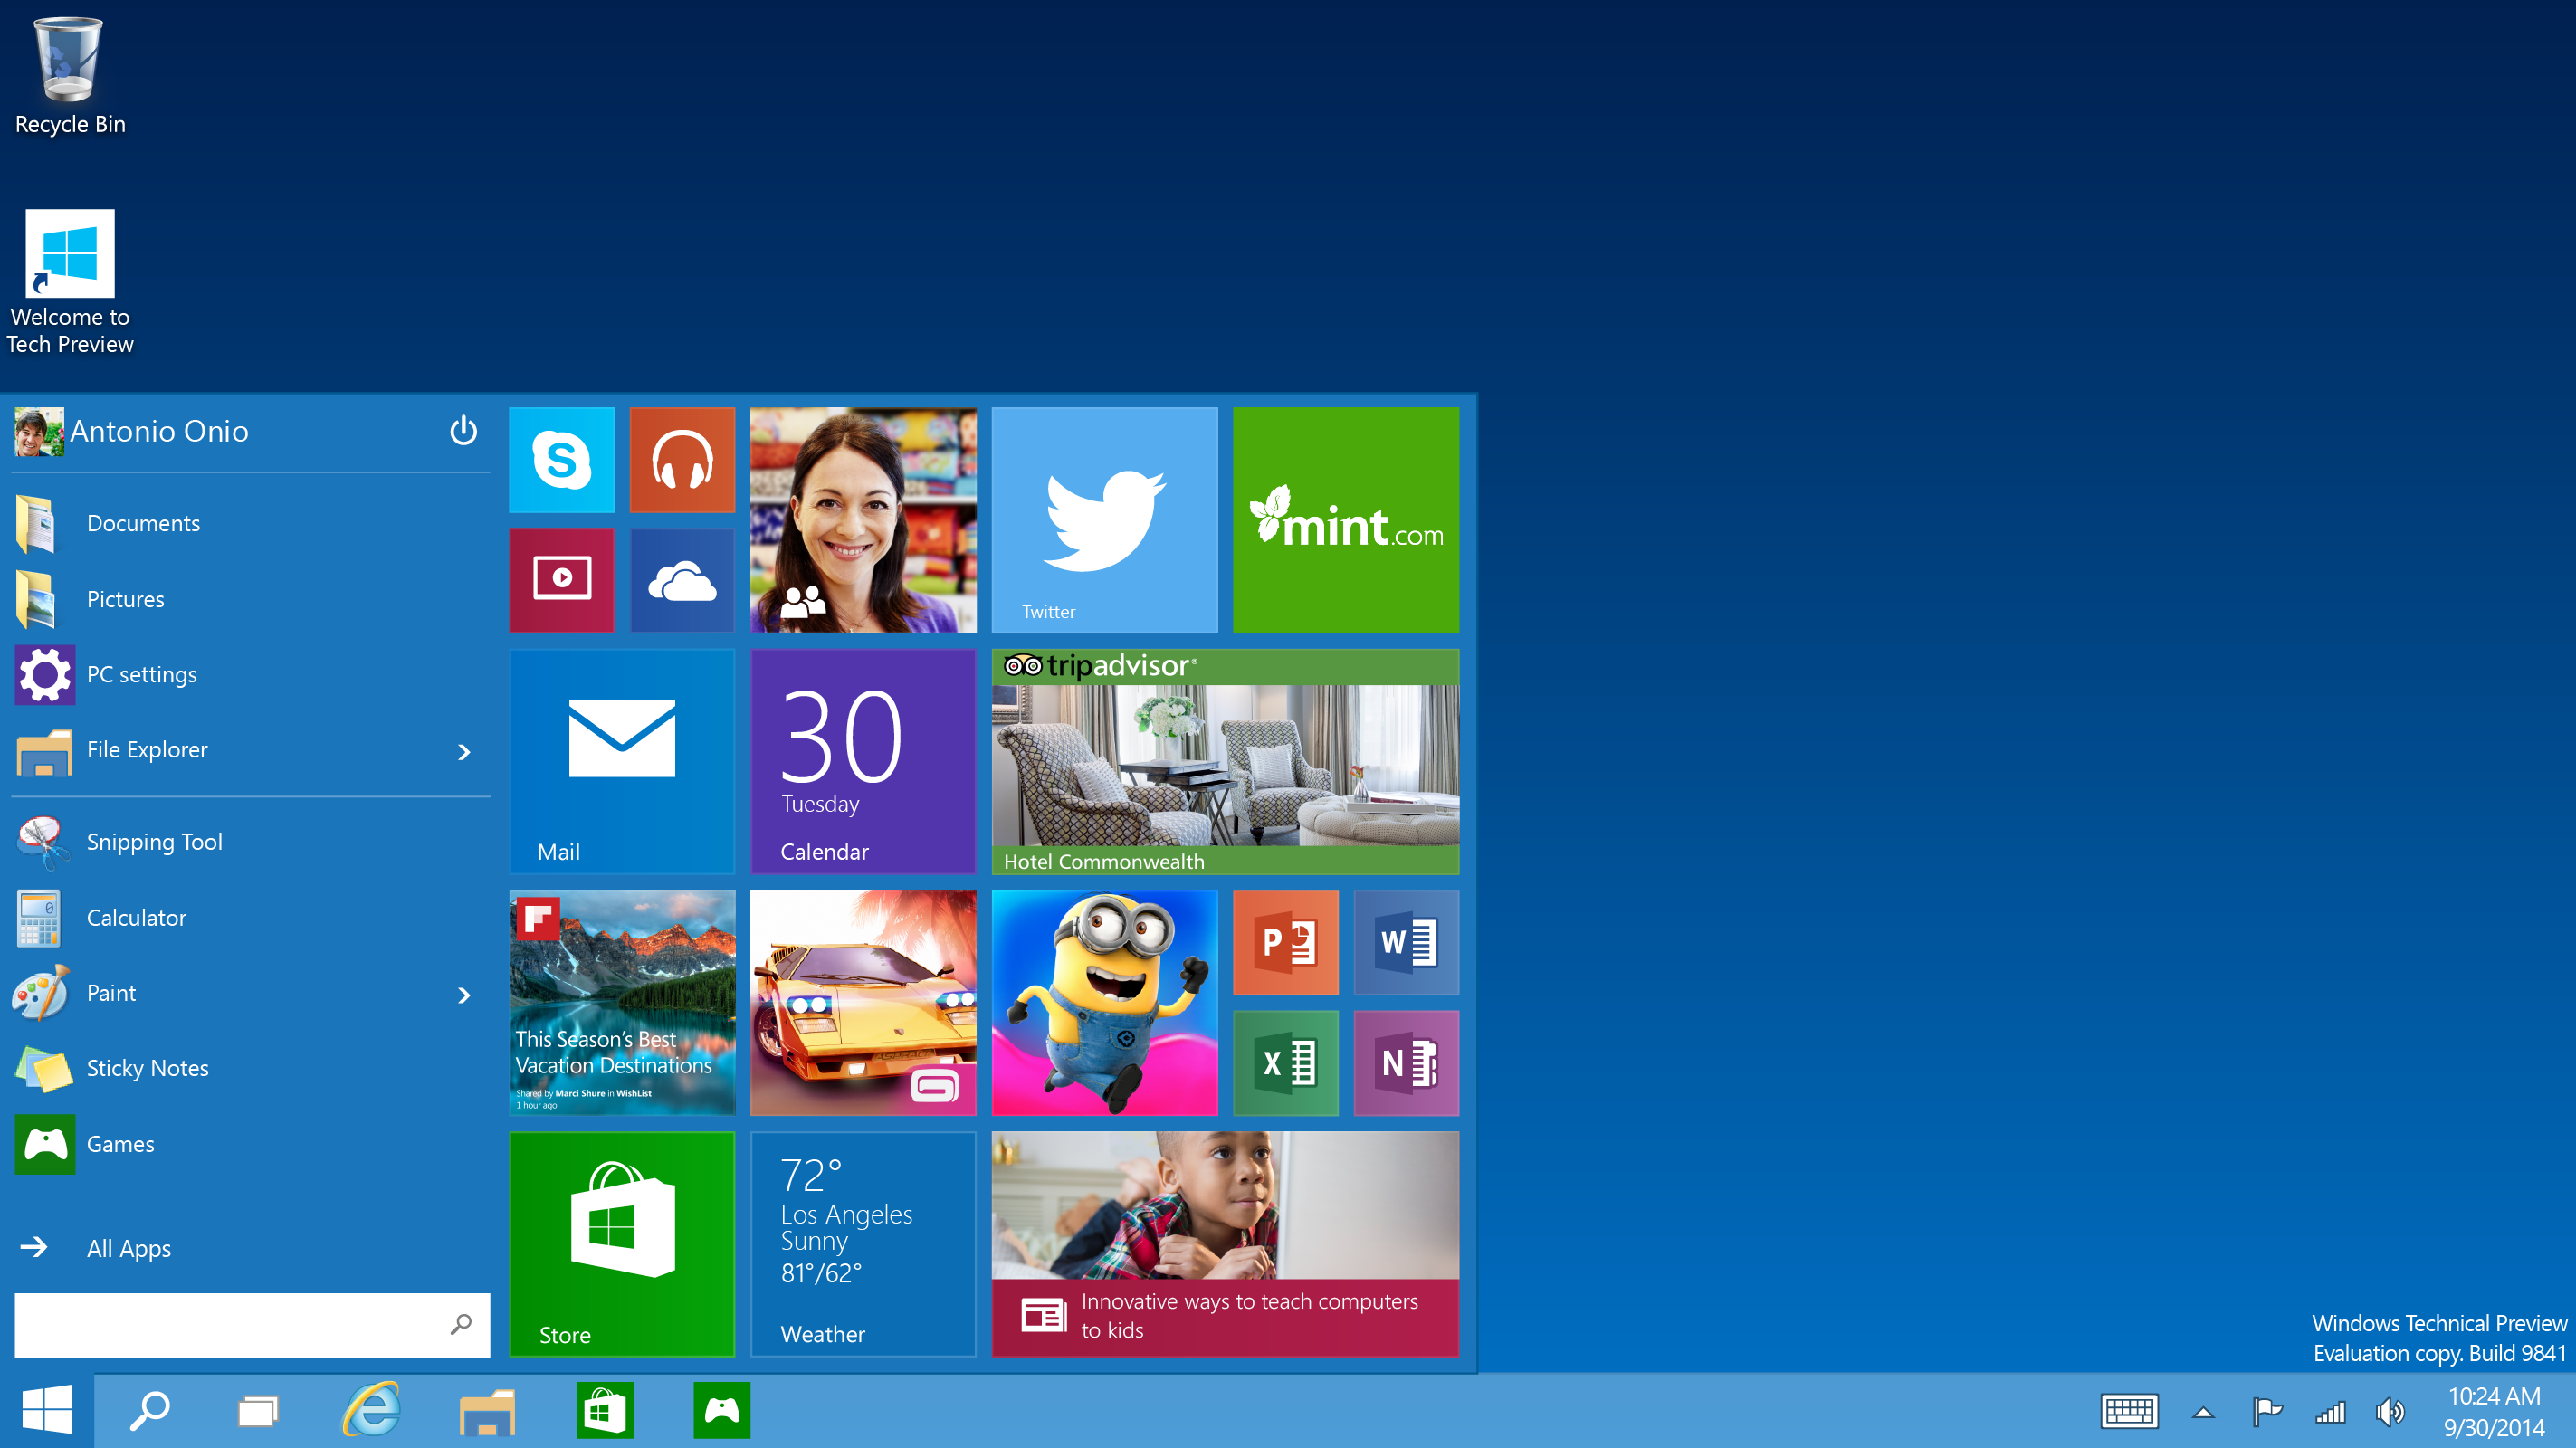 Windows 10 Tas Pratinjau Teknis pembaruan pertama